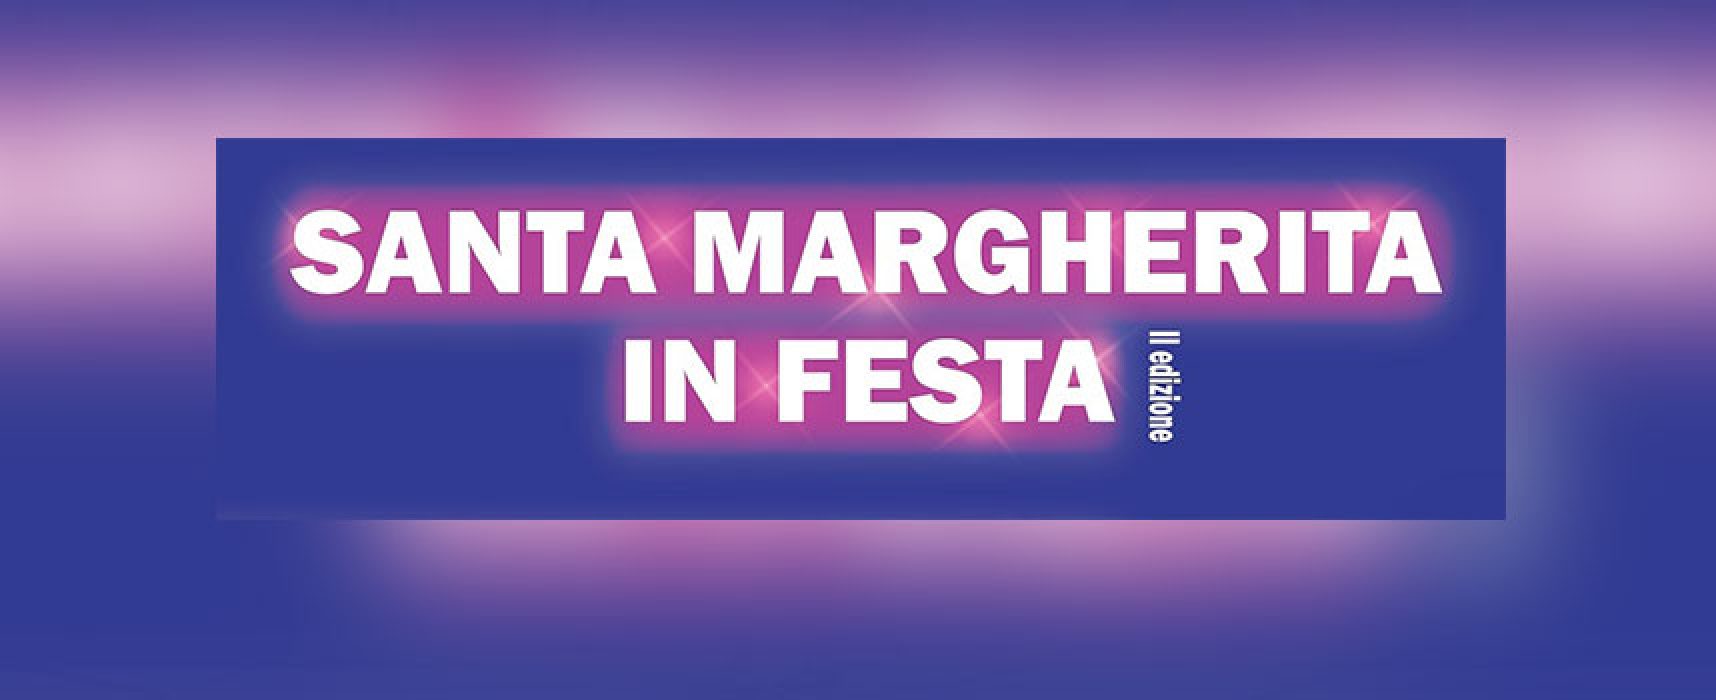 Torna “Santa Margherita in festa” con un nuovo evento e una sorpresa